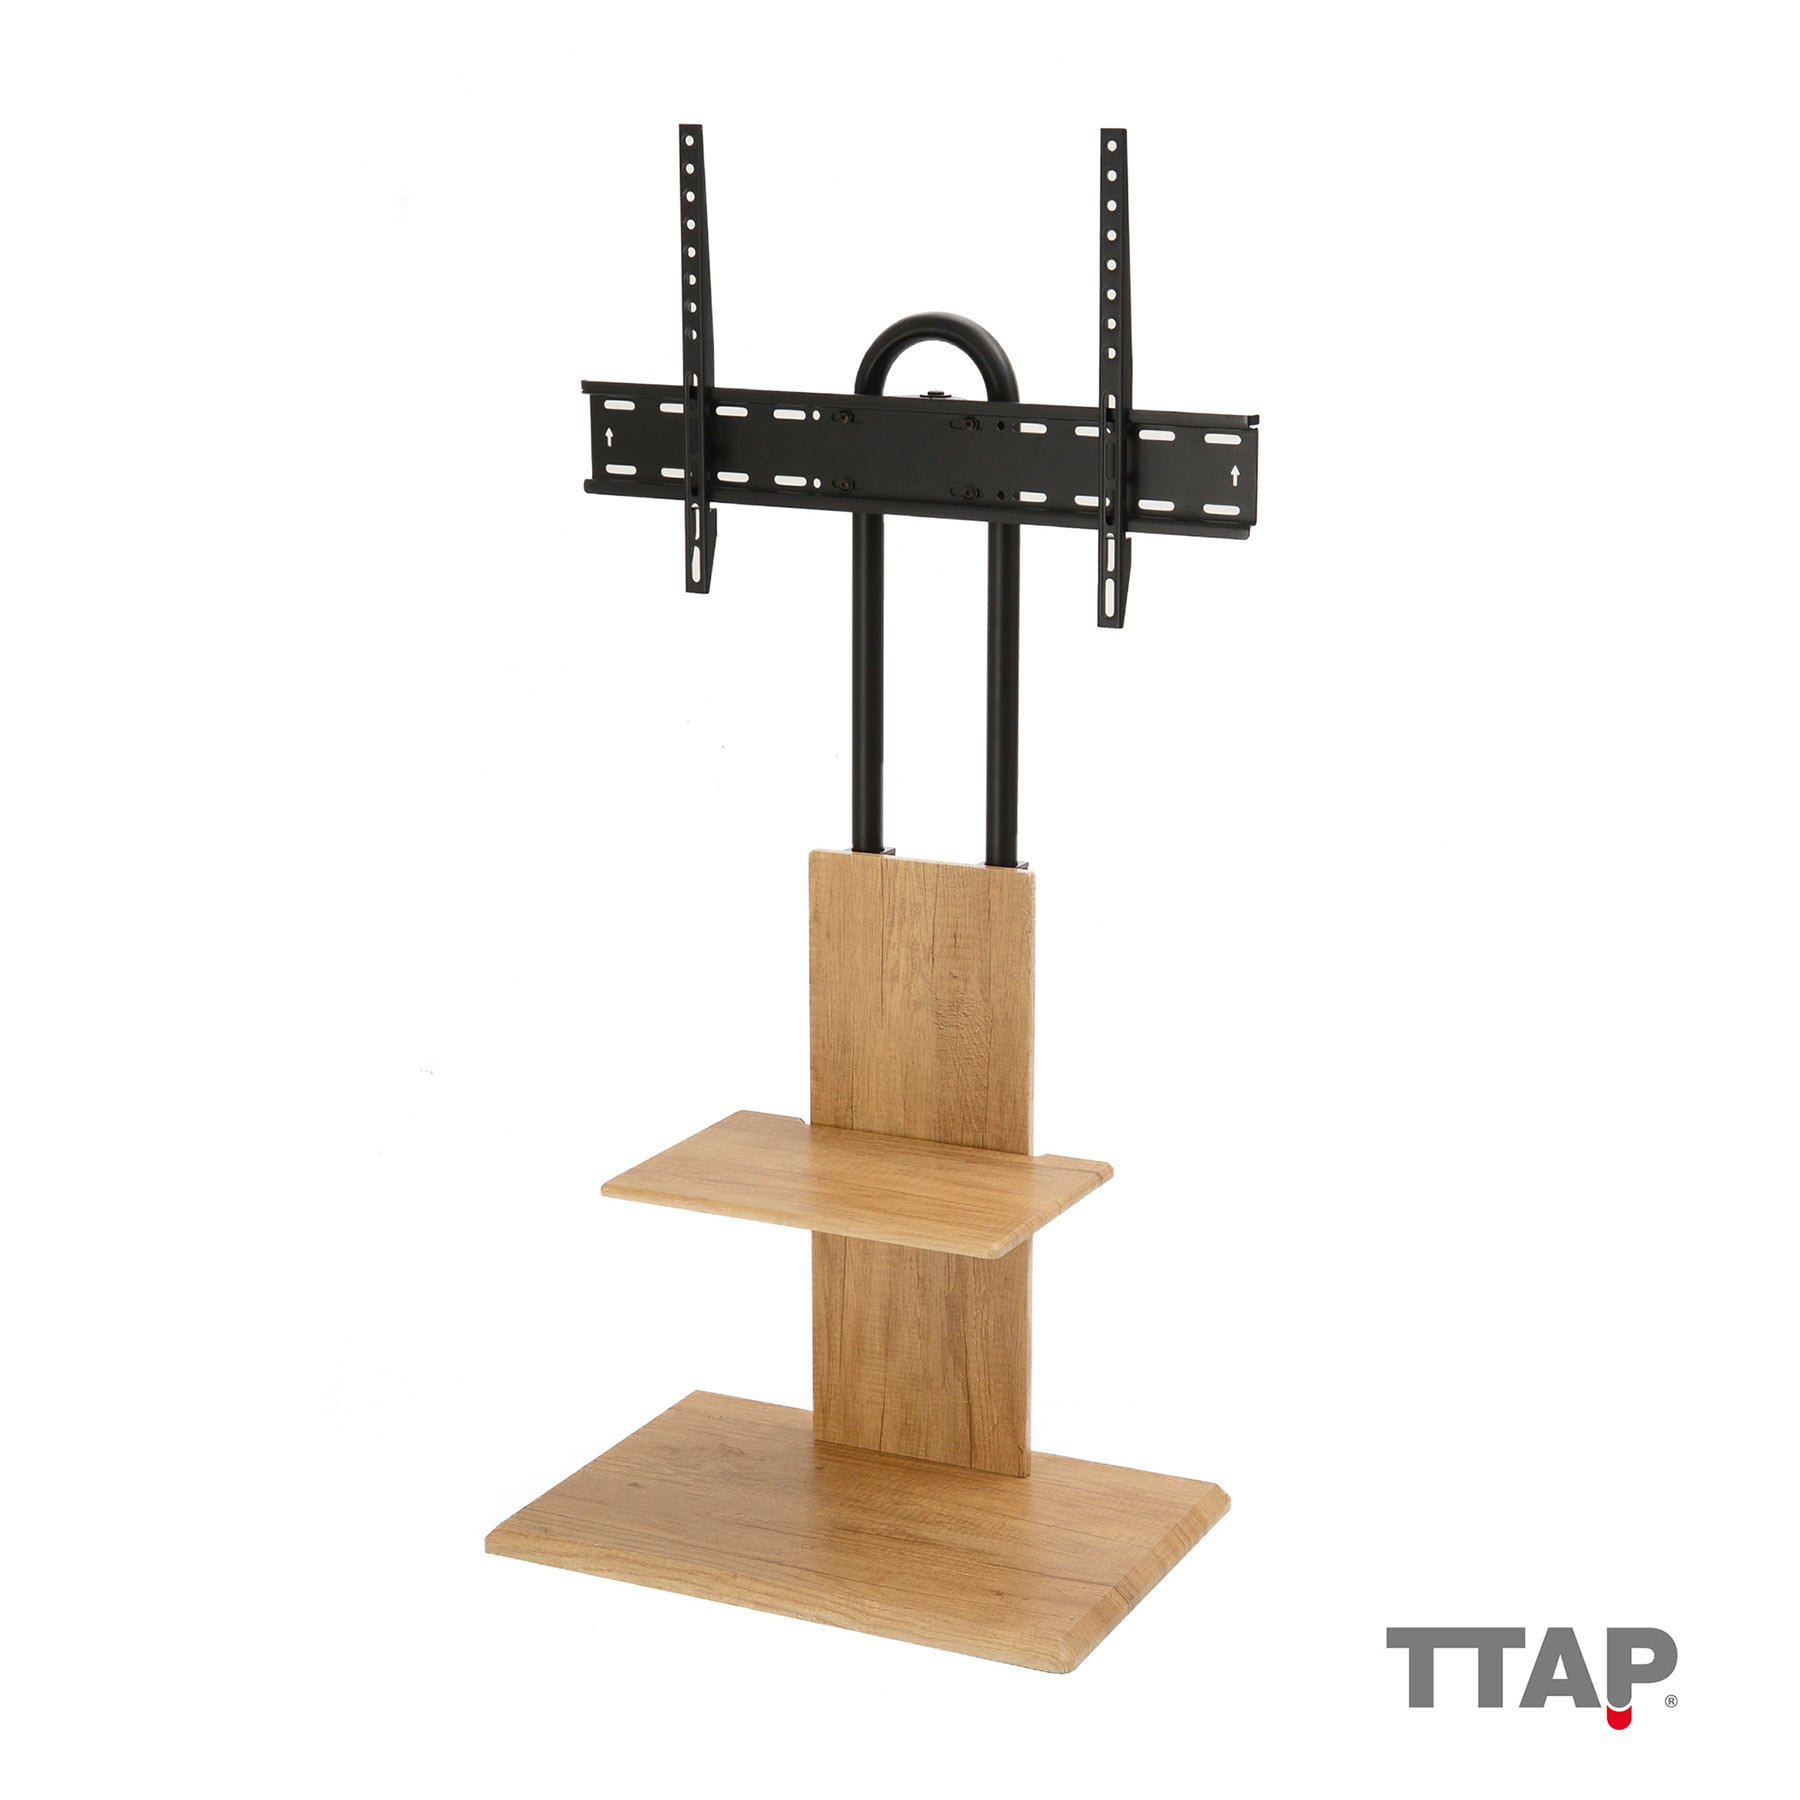 Image of TTAP FS2 OAK Pedestal TV Stand with Shelf VESA Mount in Oak